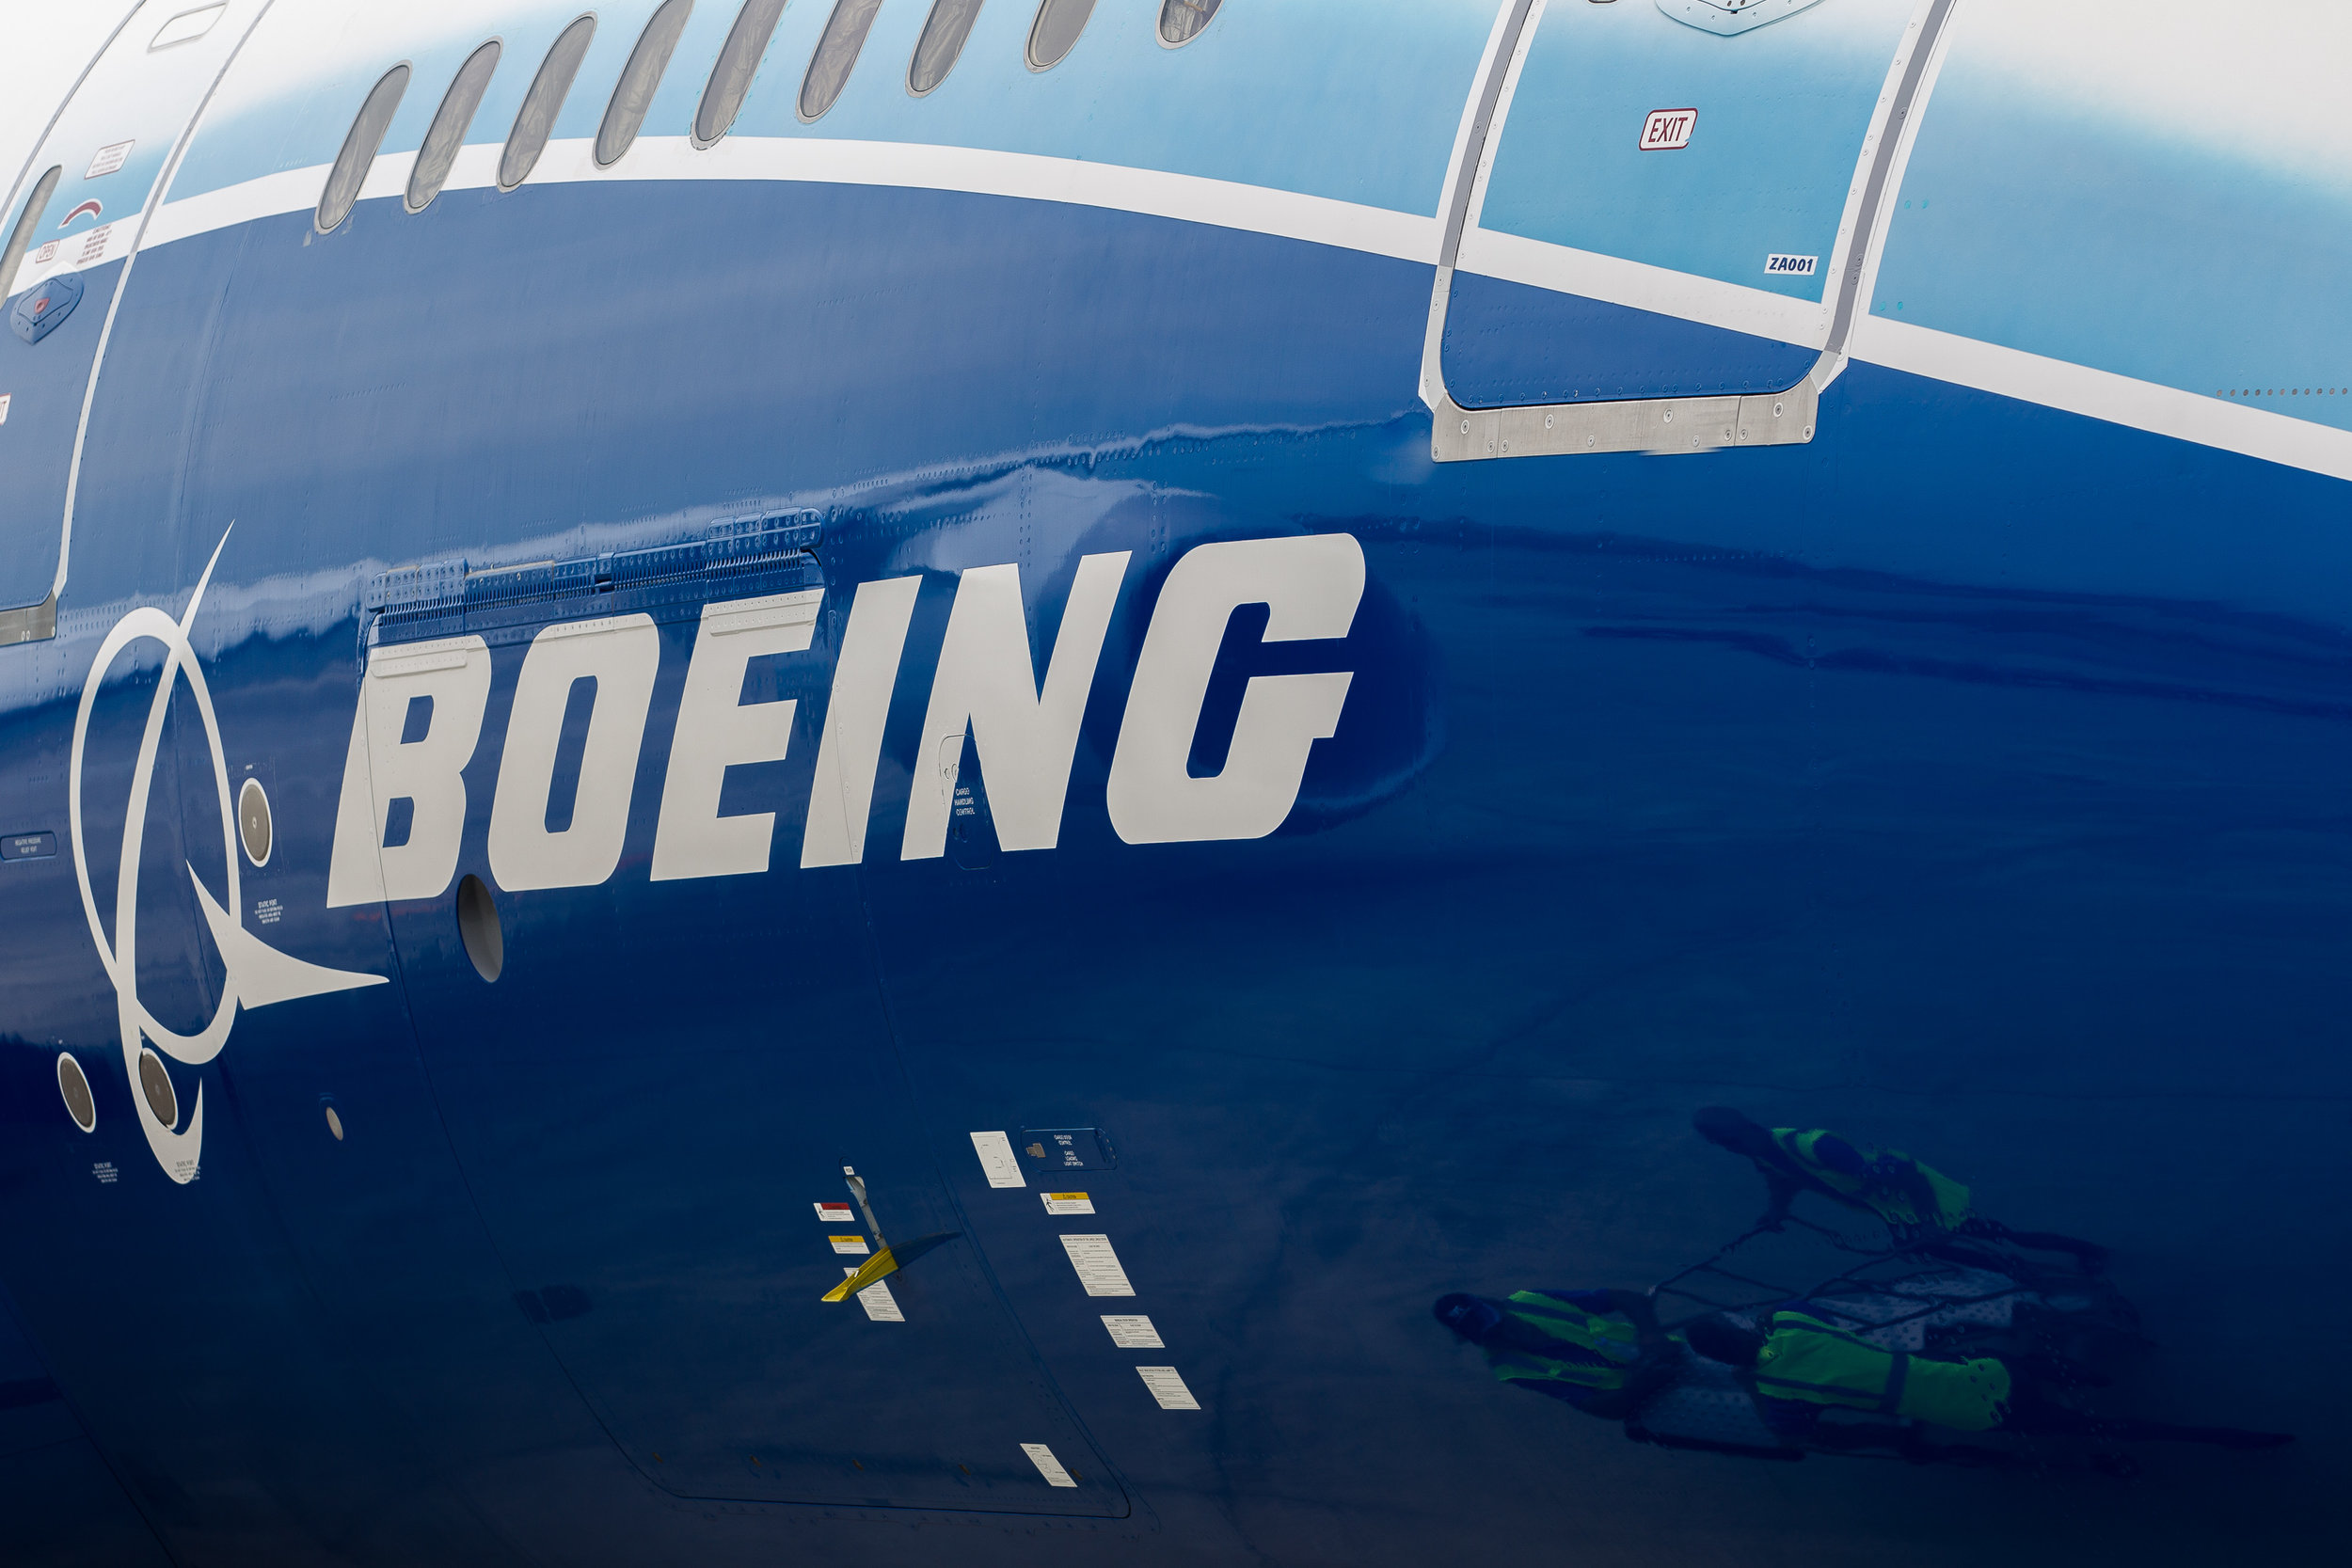 787 Dreamliner shot for Boeing